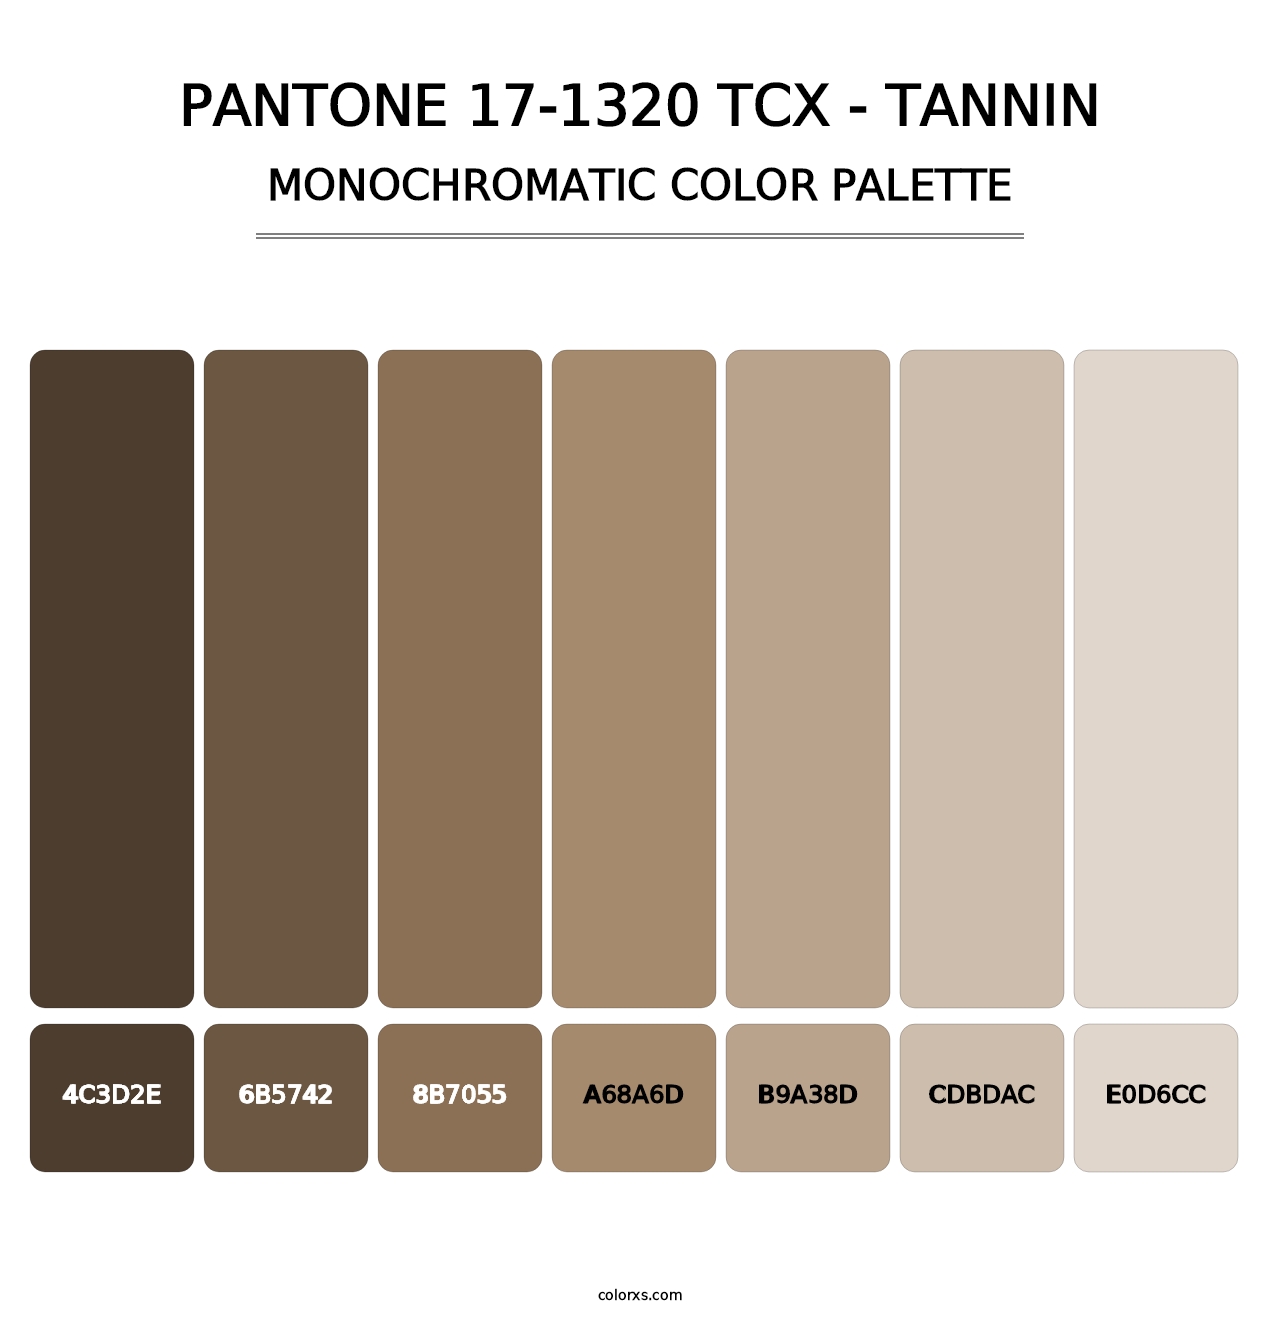 PANTONE 17-1320 TCX - Tannin - Monochromatic Color Palette